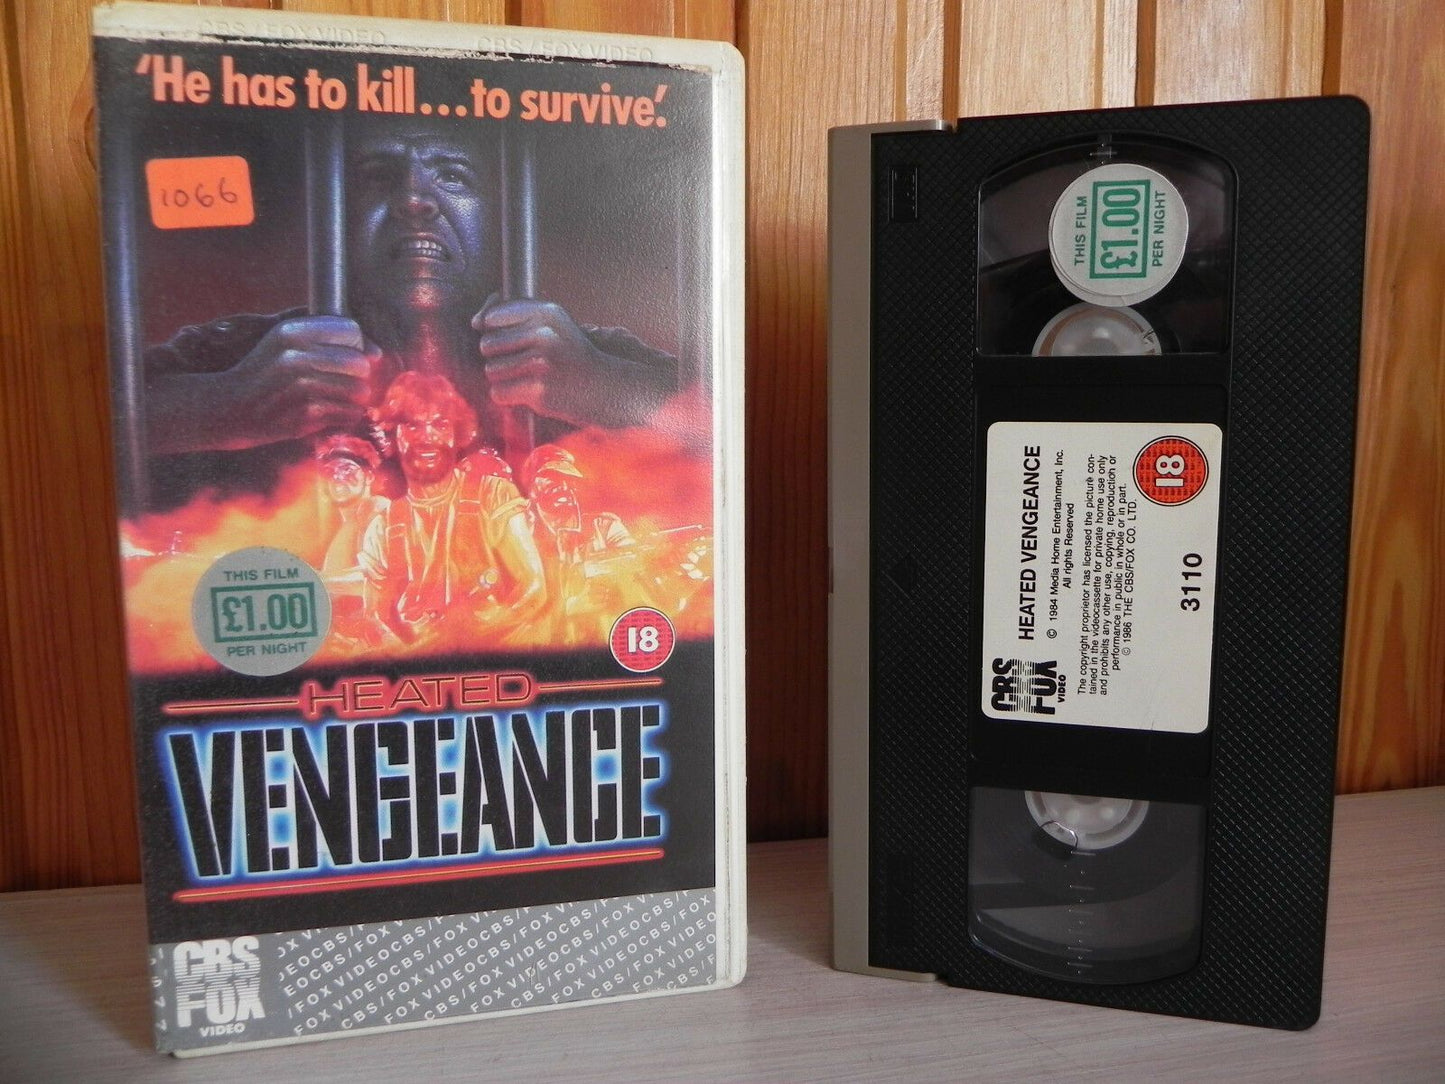 Heated Vengeance - Hardcore Mass Artillery Showdown - Serious Action - VHS - Golden Class Movies LTD